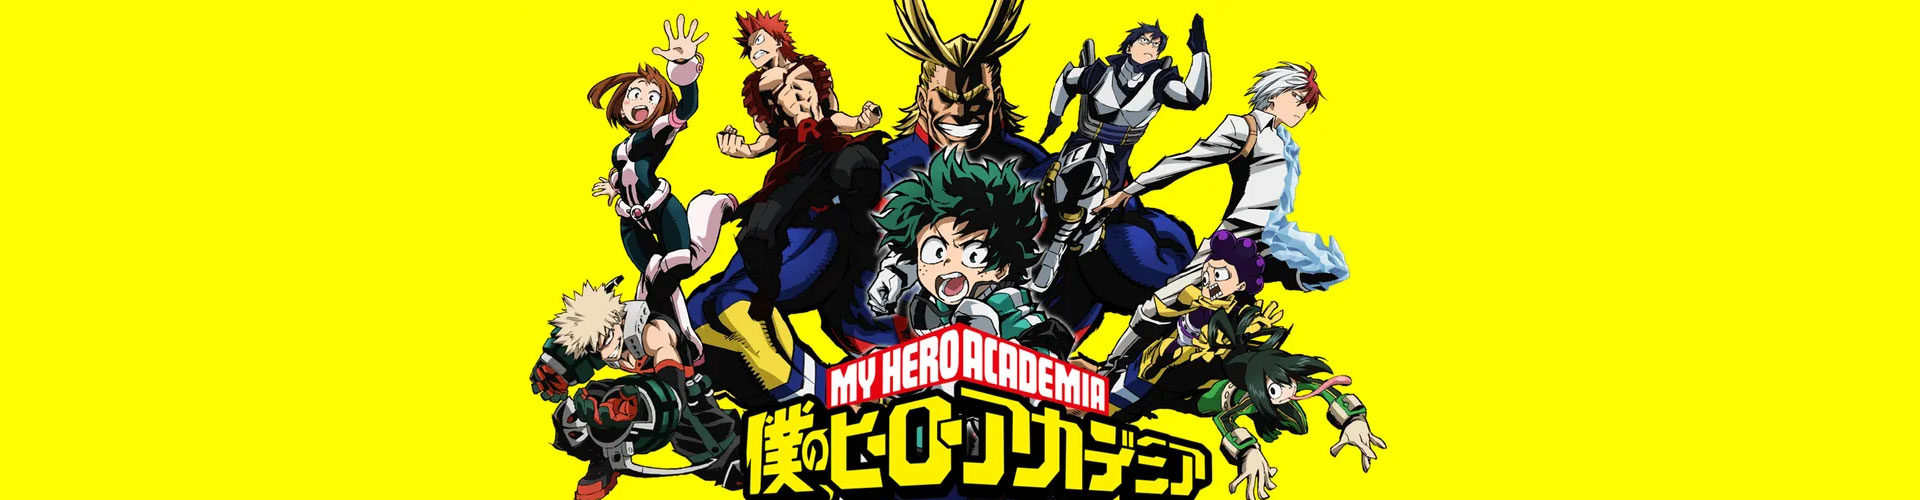 My Hero Academia - Boku no Hero